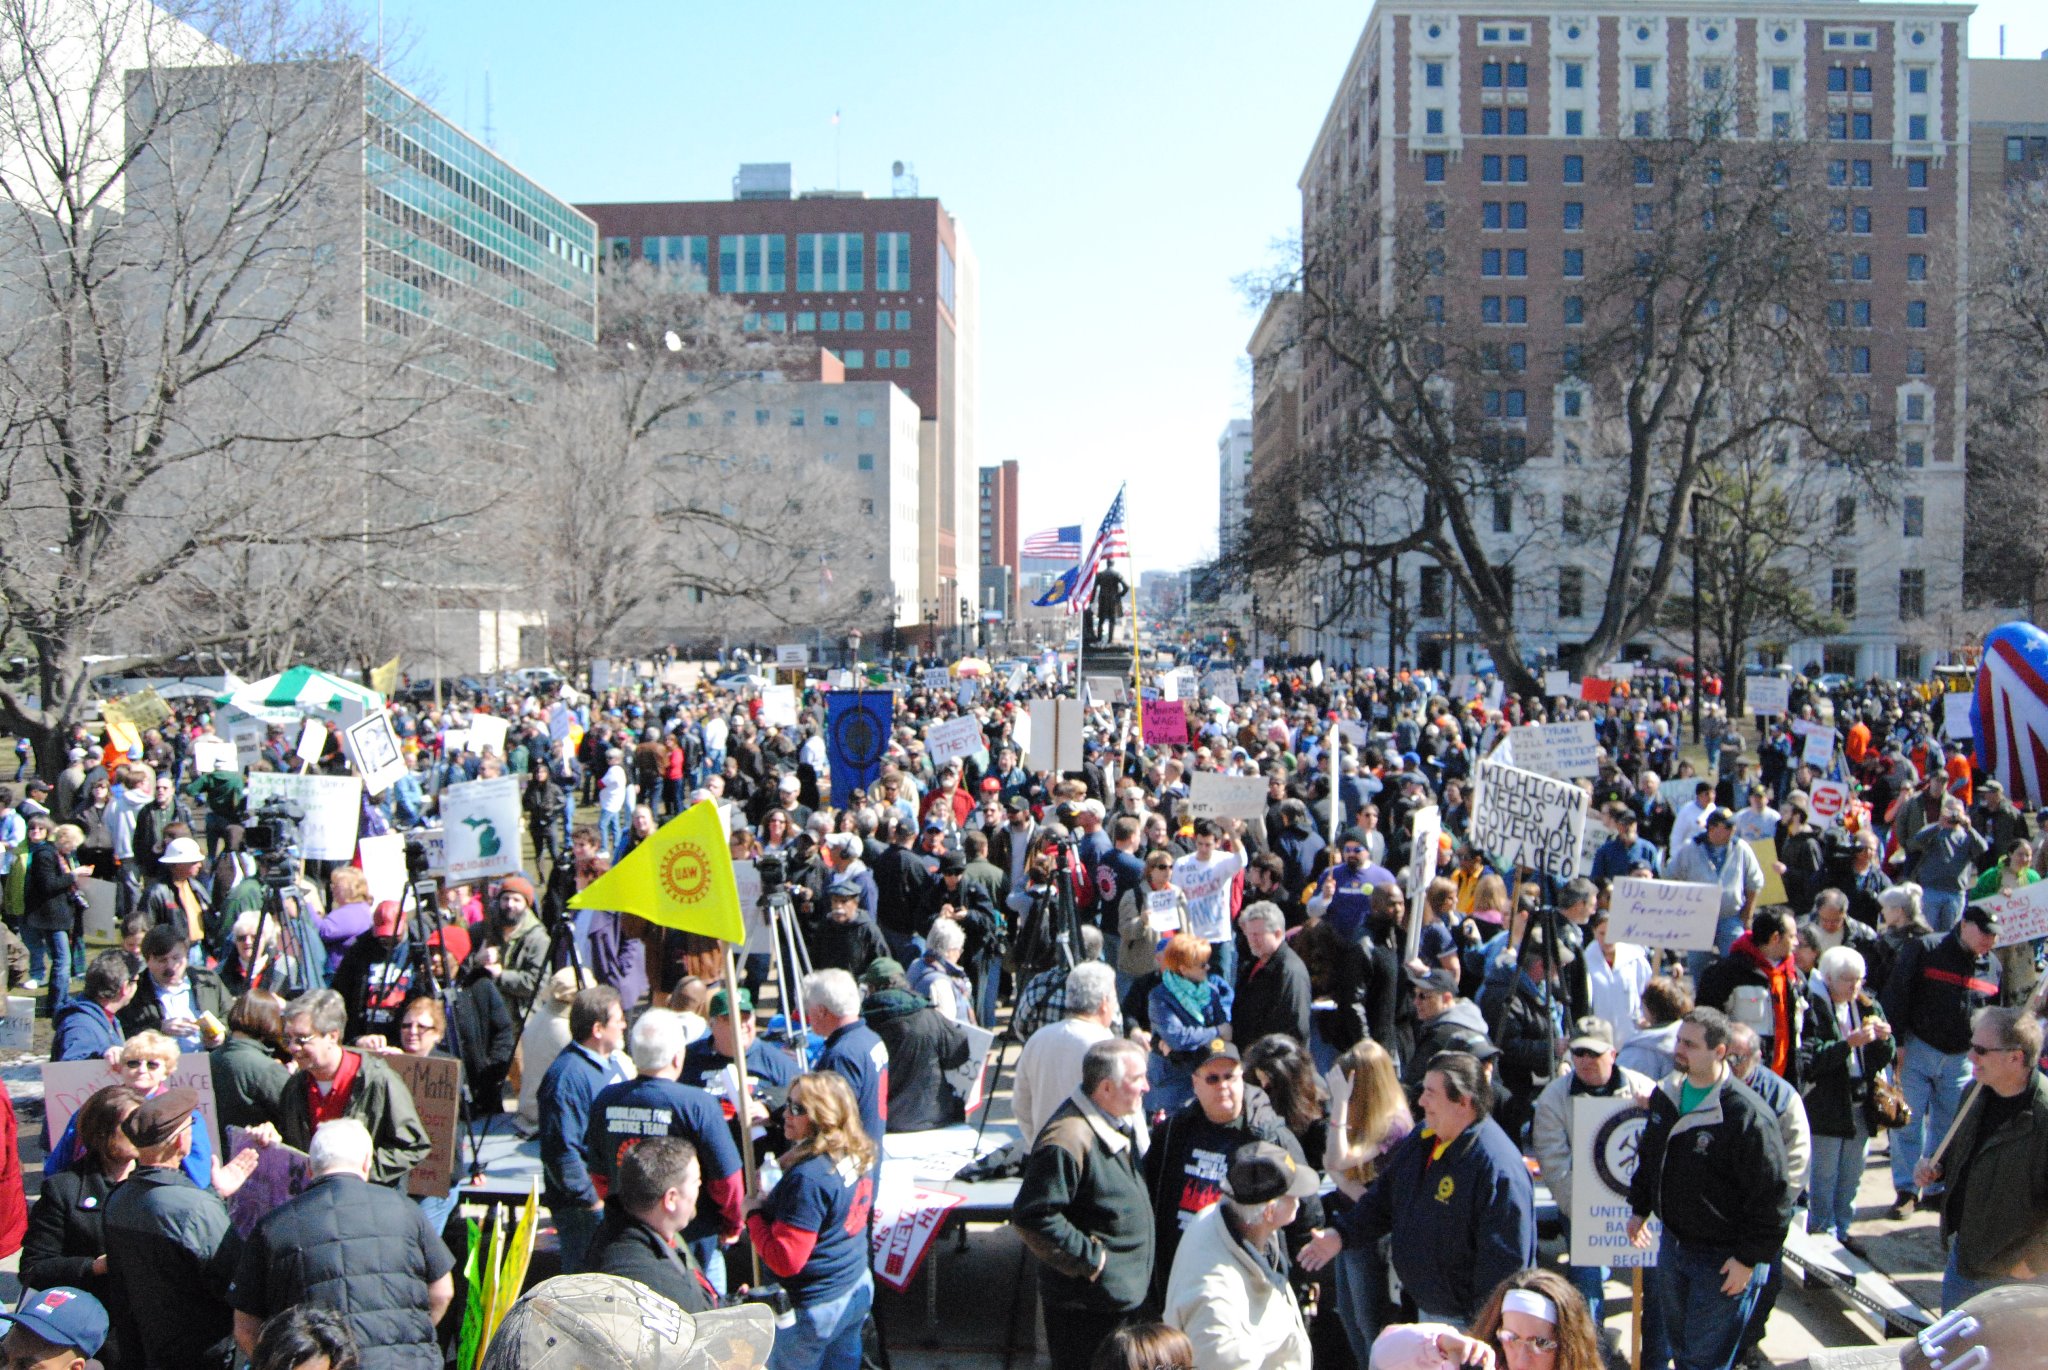 Michigan Labor Rights Protest 2012